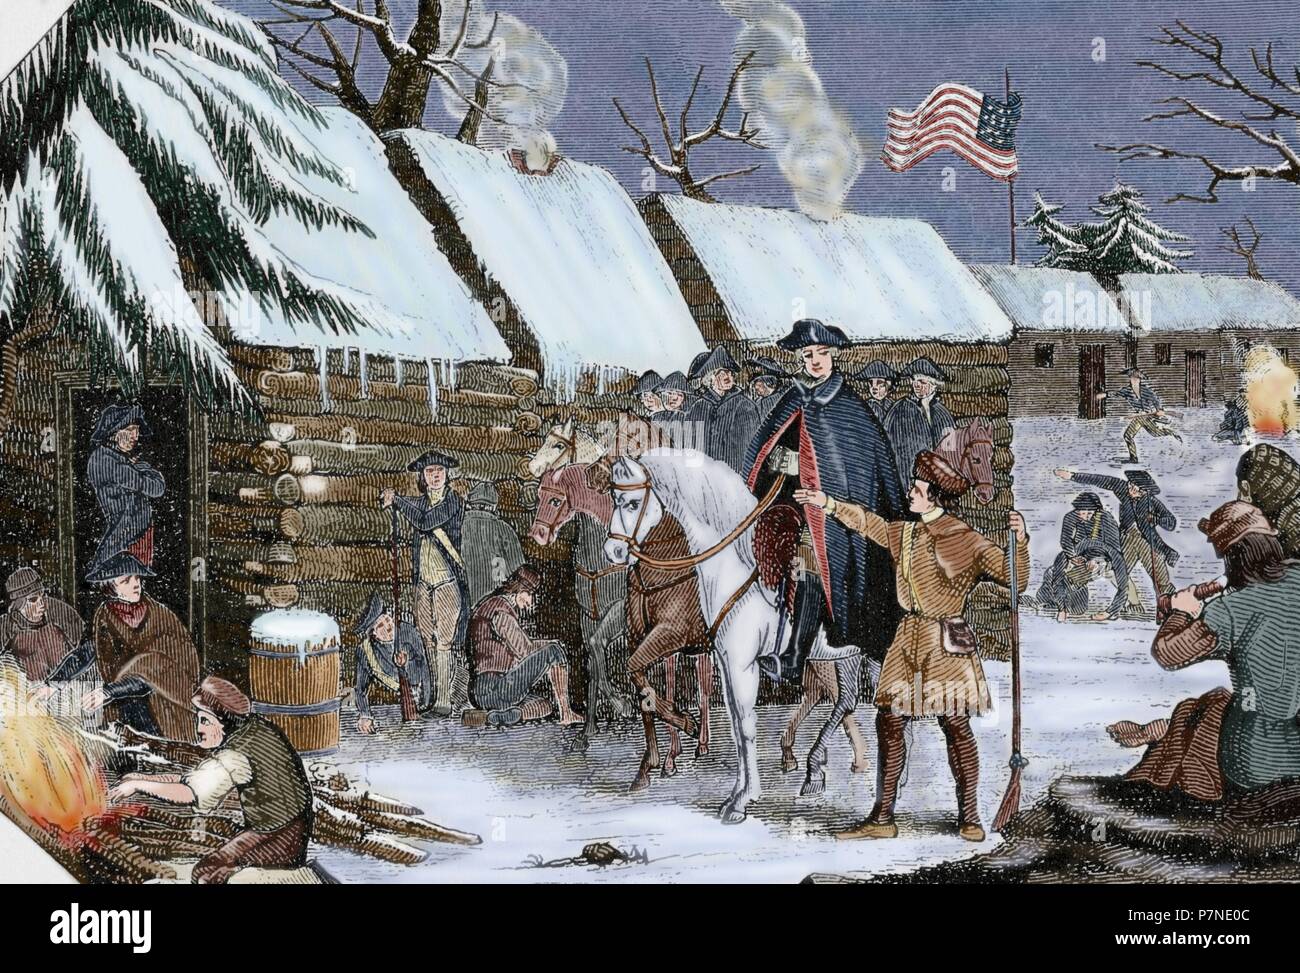 Amerikanischer Unabhängigkeitskrieg (1775-1783). George Washington (1732-1799) besuche Valley Forge (Pennsylvania), Camp der Kontinentalen Armee im Winter 1777-1778. Gravur. 19. Gefärbt. Stockfoto